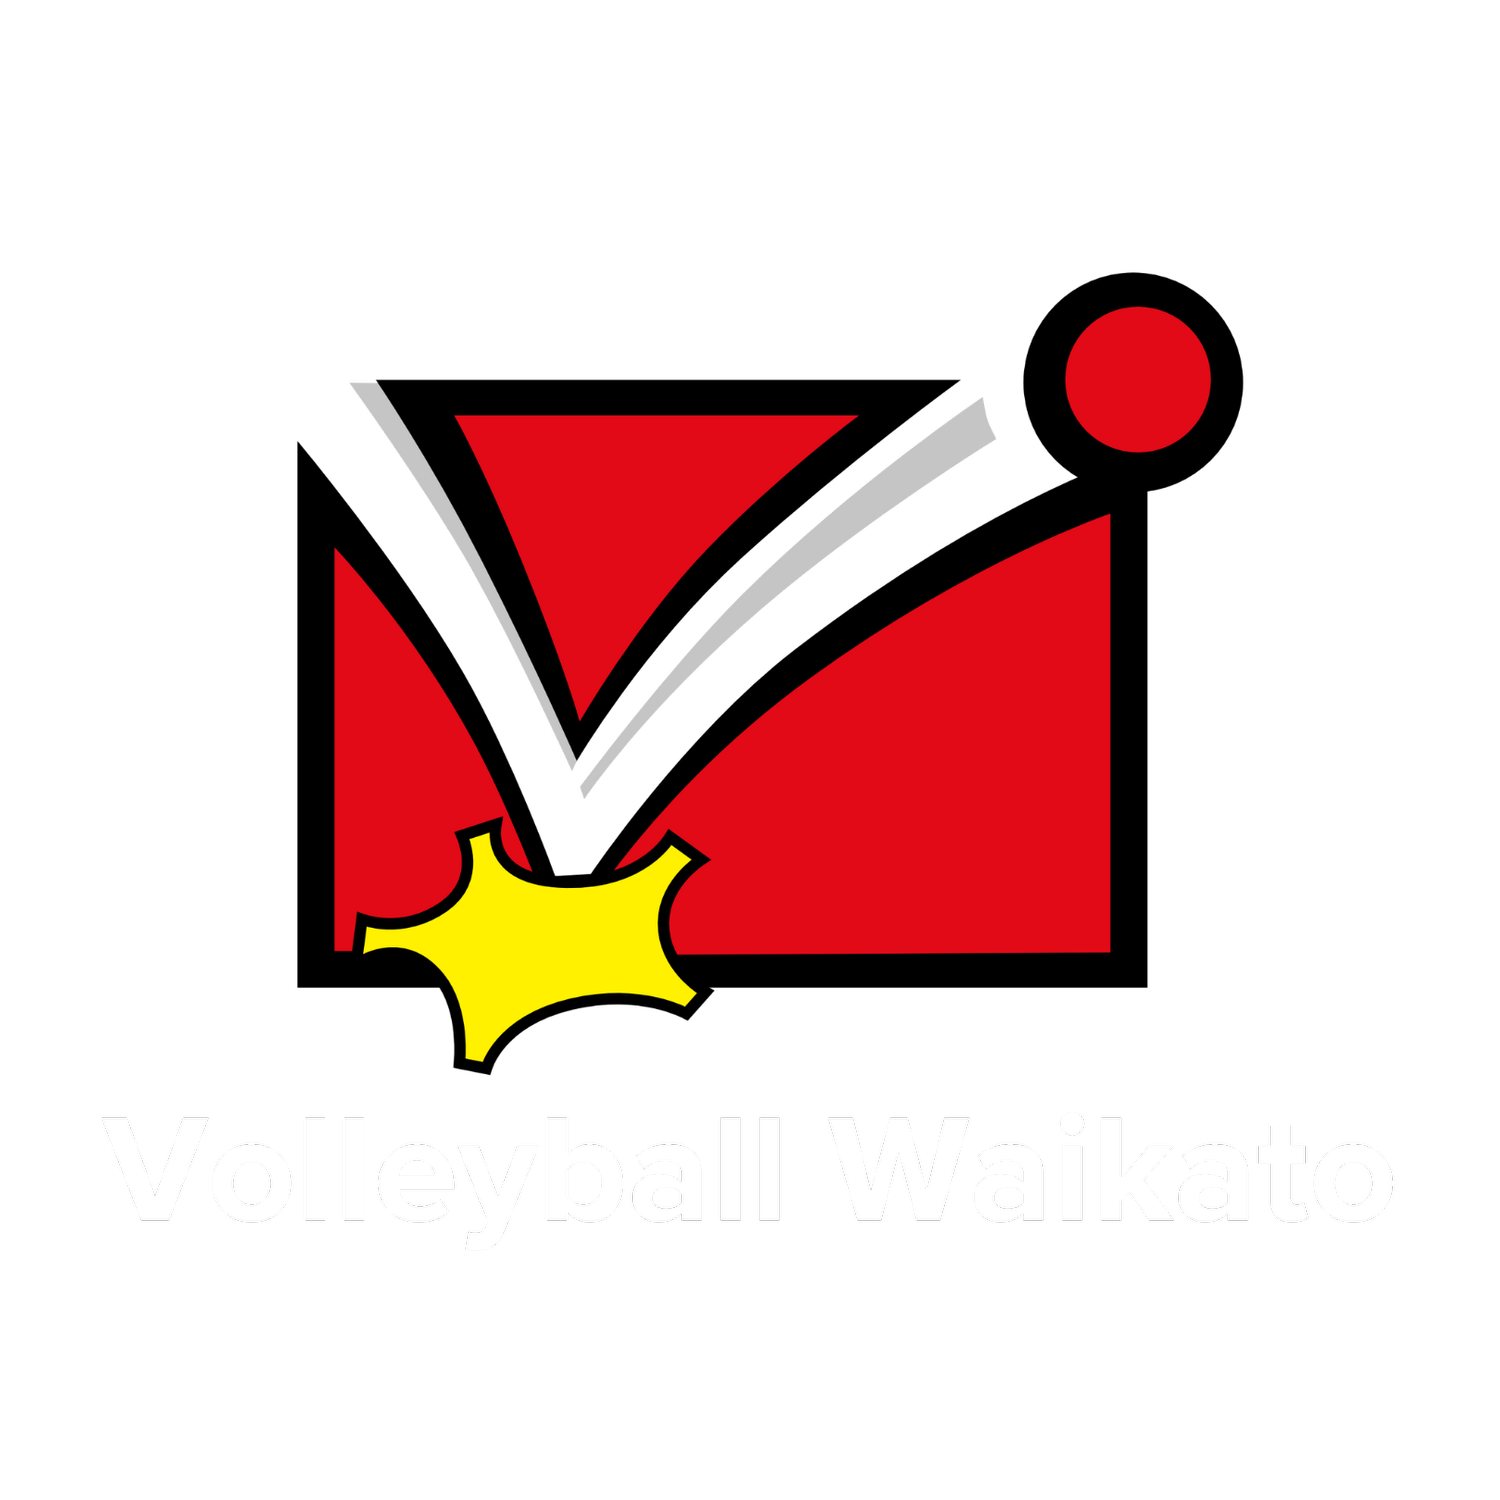 Volleyball Waikato